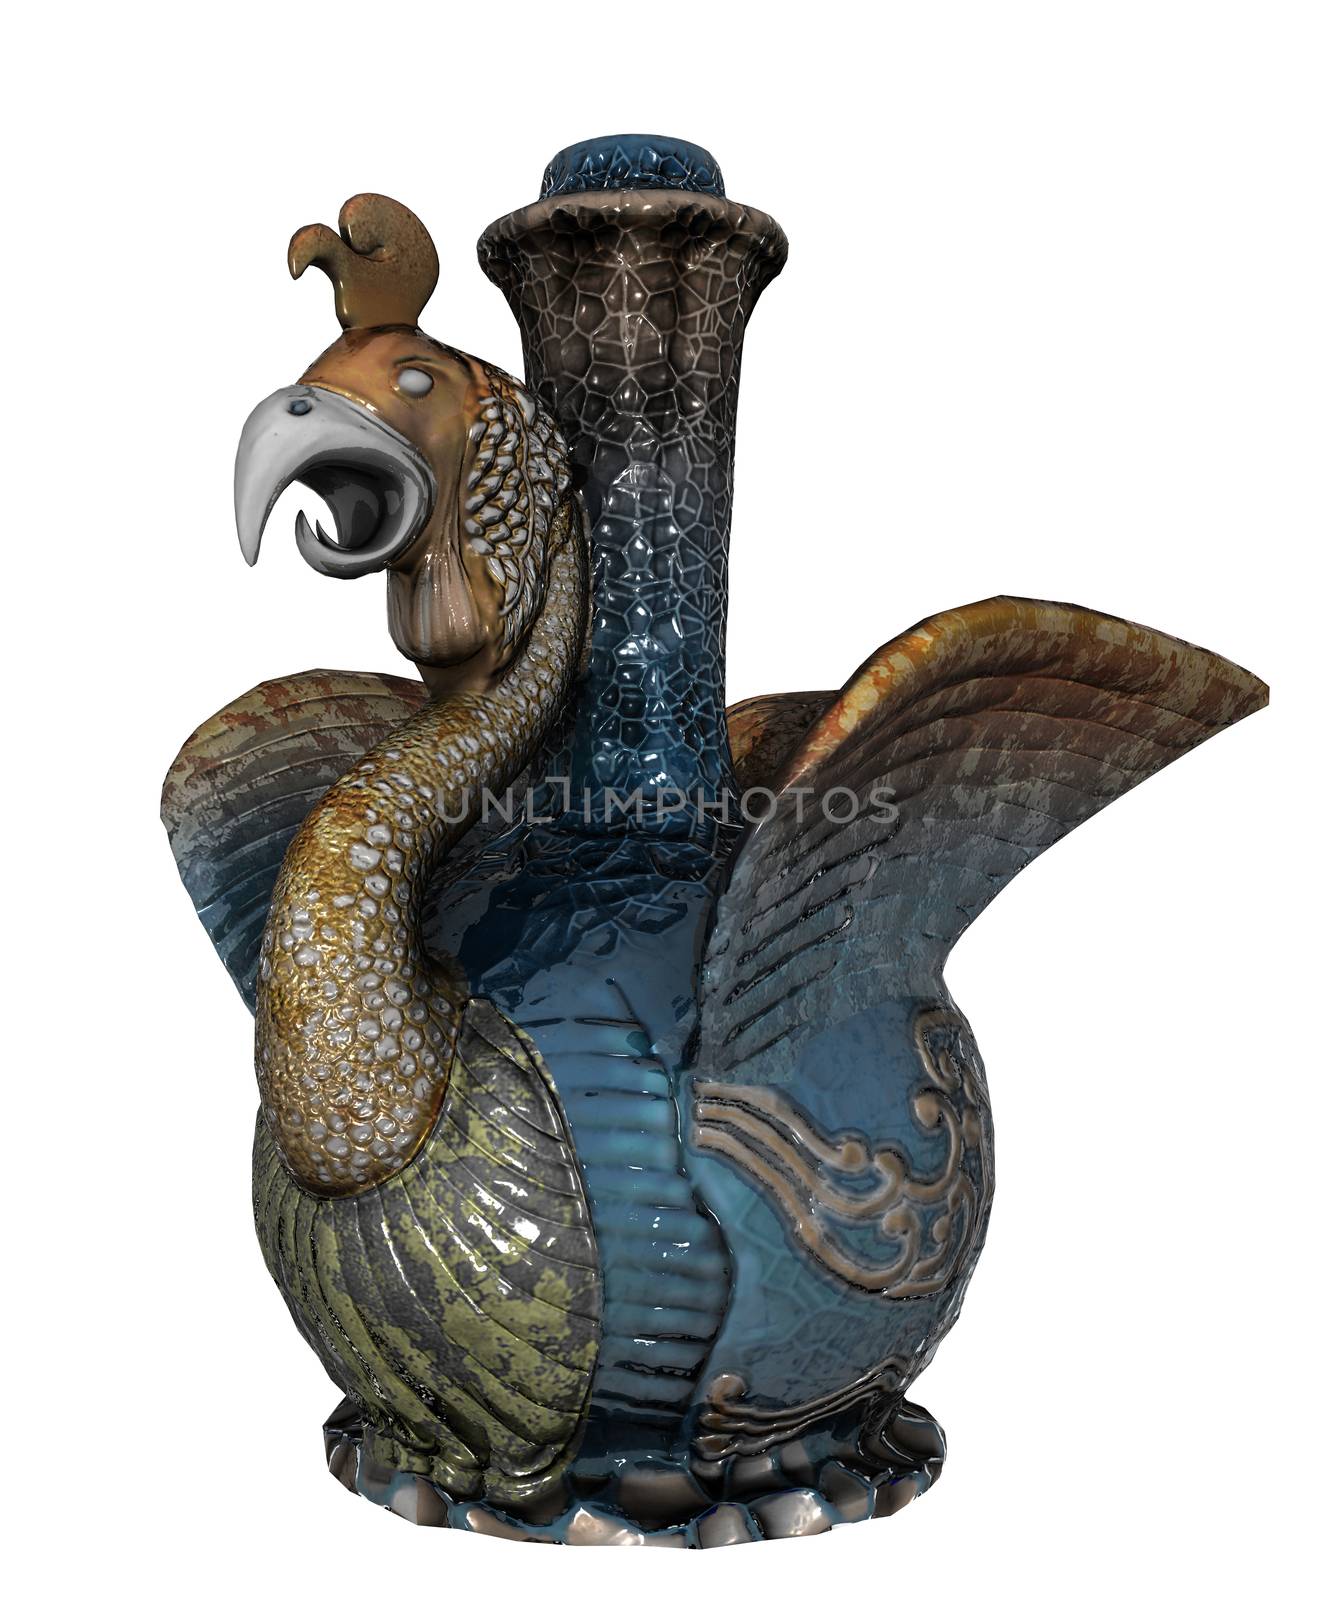 Chinese bird porcelain or ceramic vase by Morphart